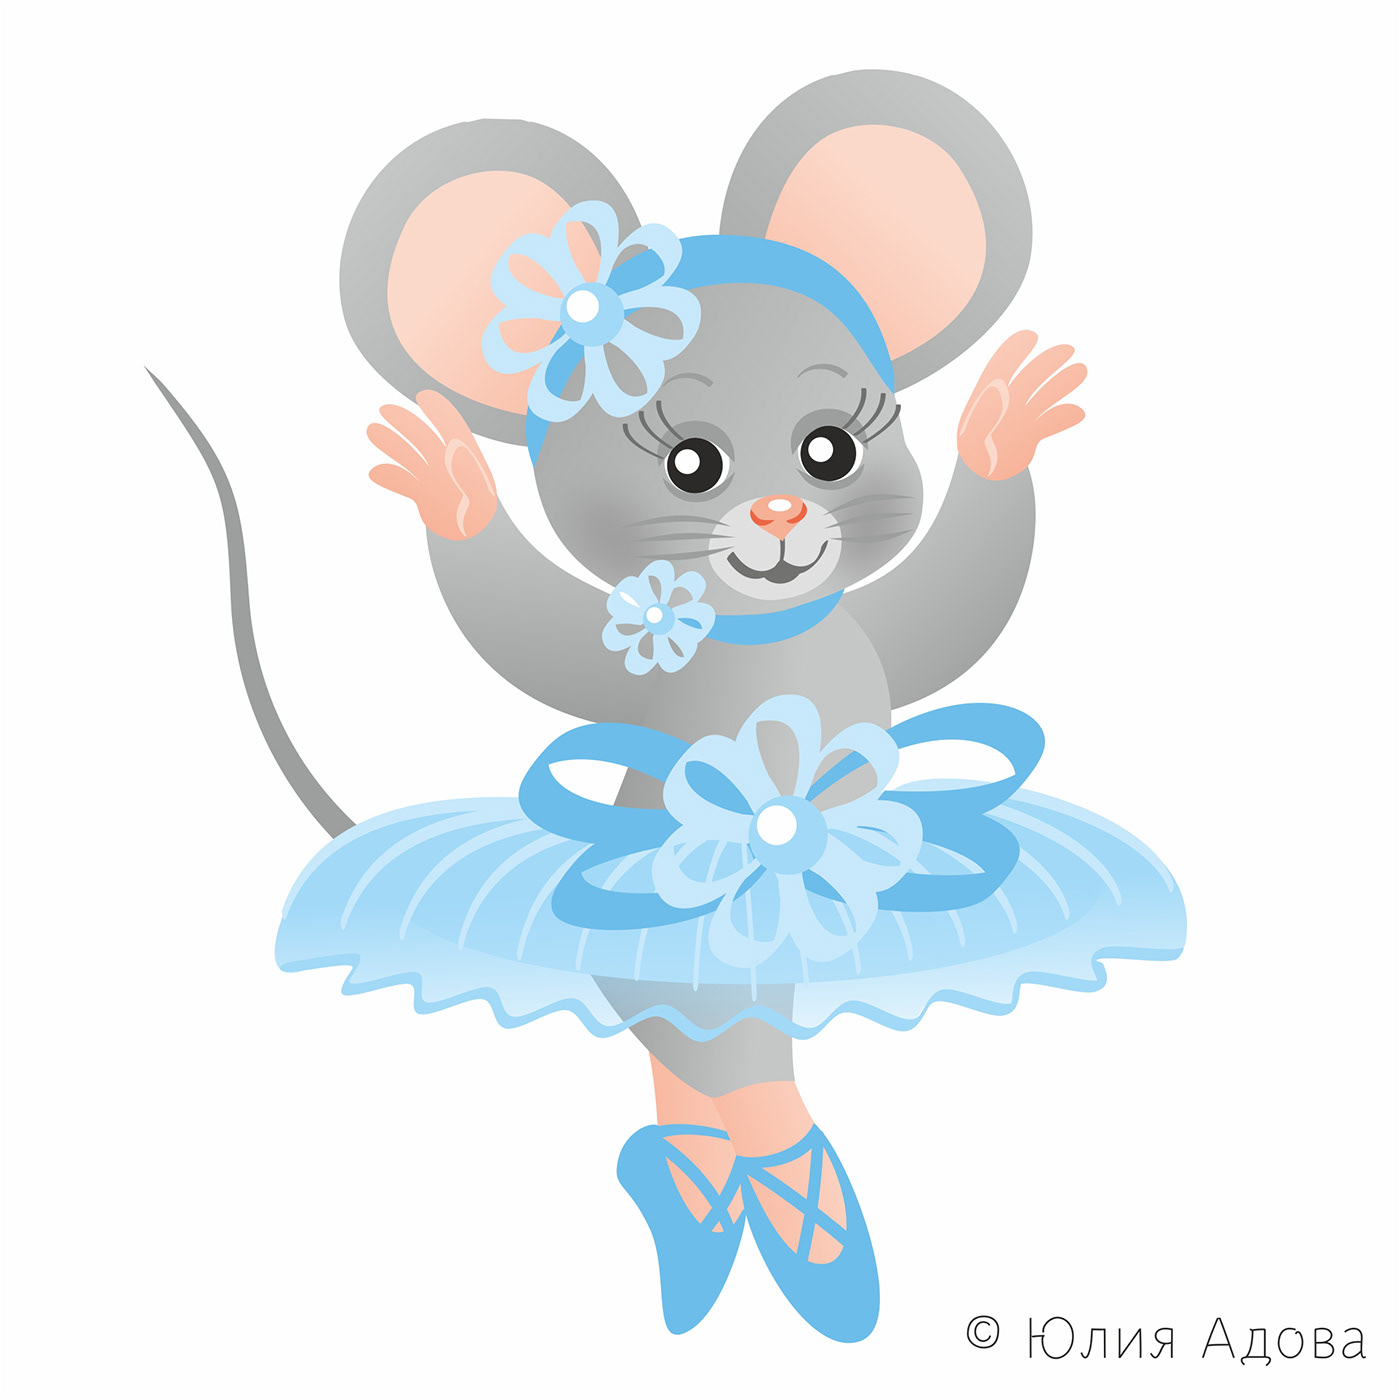 мышка мышки mouse Character персонаж mice балет ballet мультяшки мышата